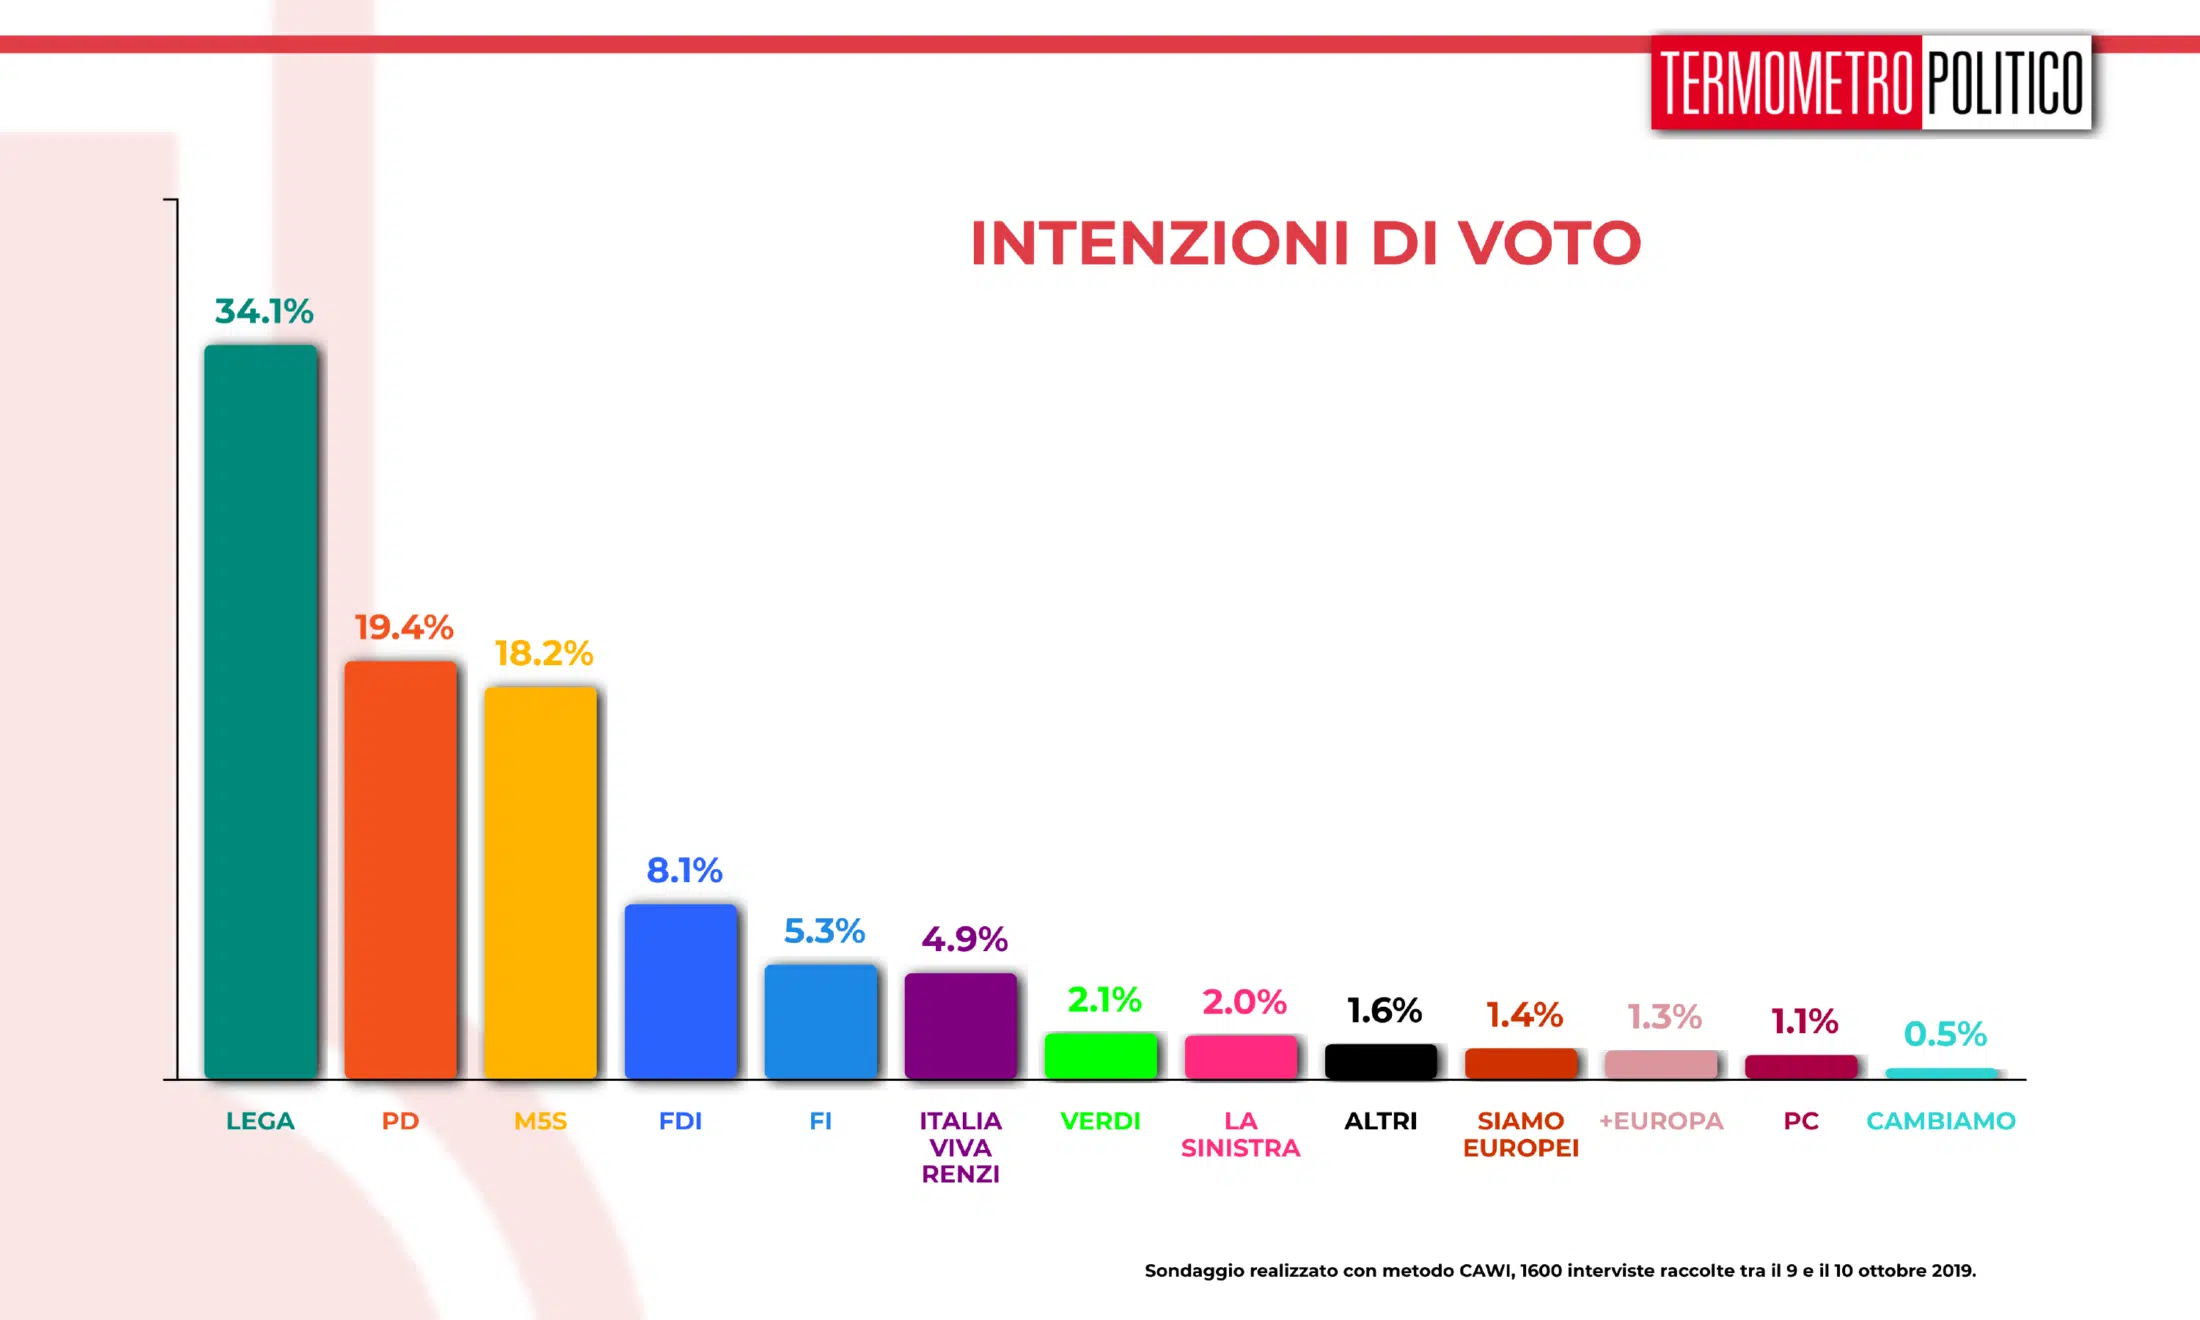 Sondaggio elettorali Tp, Termometro Politico del 11 ottobre 2019: Lega sempre prima nei sondaggi con il 34% dei consensi. Seguono PD (19%) e M5S (18%). Fuori dal podio e sopra il 4% FDI (8,1%), Forza Italia (5,3) e Italia Viva di Renzi (4,9%)